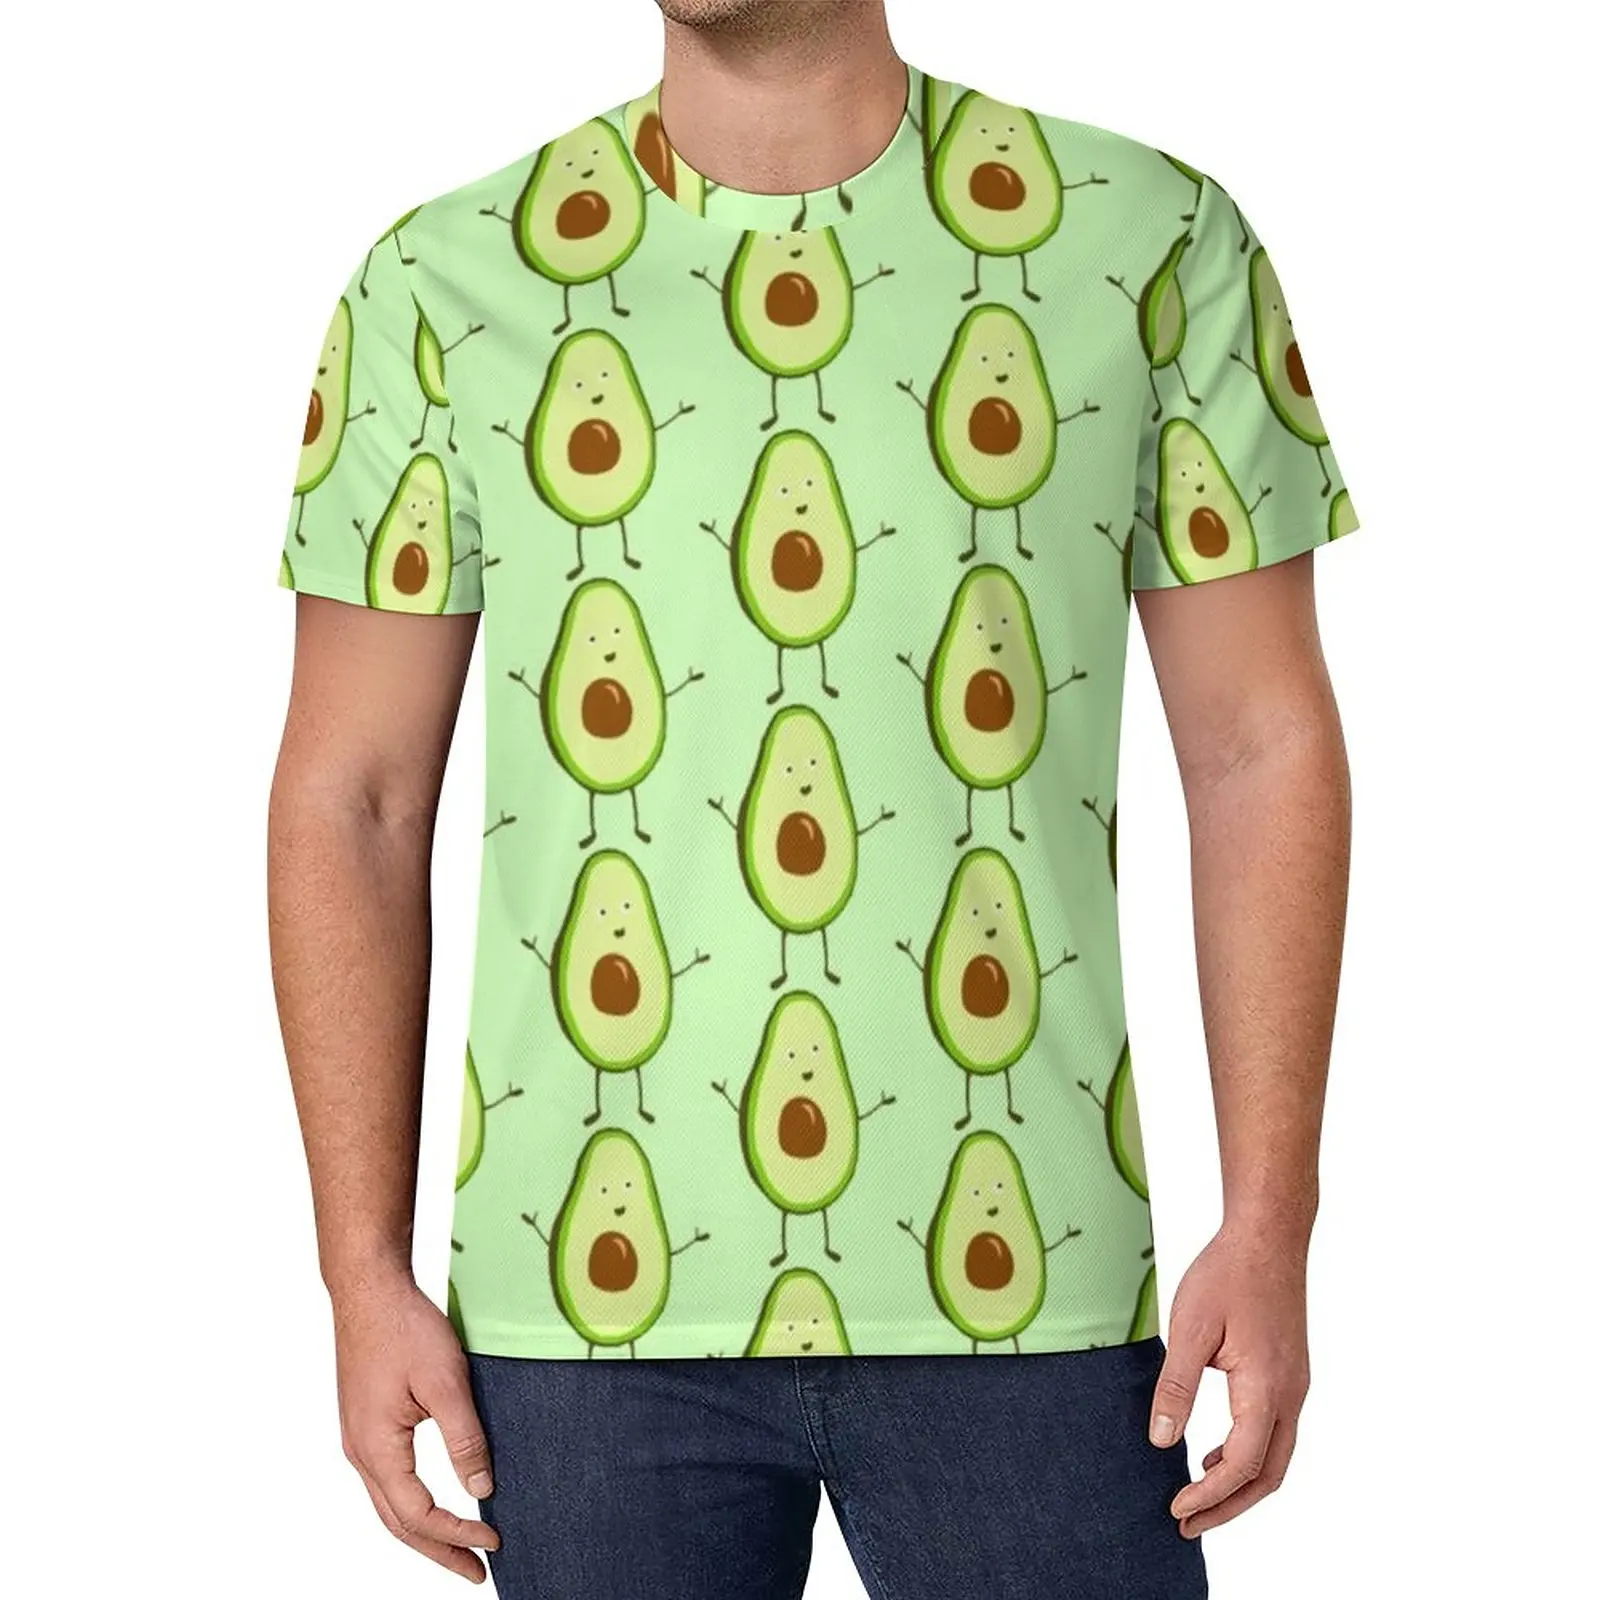 

Футболка с изображением авокадо, Мужская футболка с рисунком фруктов, еды, обнимания, любви, летняя футболка с коротким рукавом, Забавные топы большого размера, идея для подарка